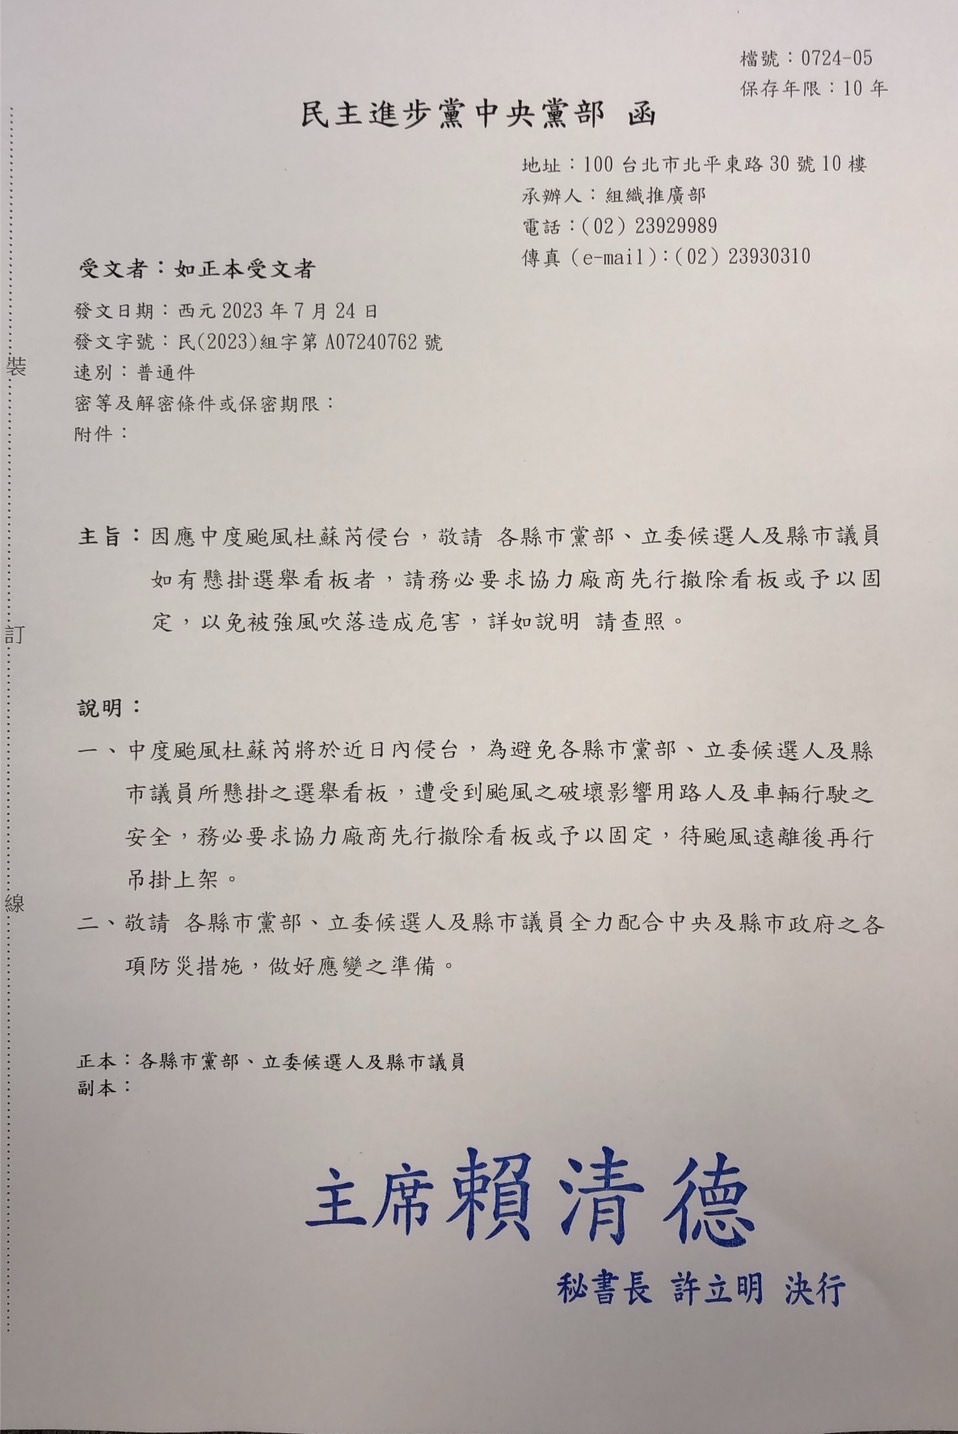 因應杜蘇芮颱風 民進黨下令撤除或固定選舉看板